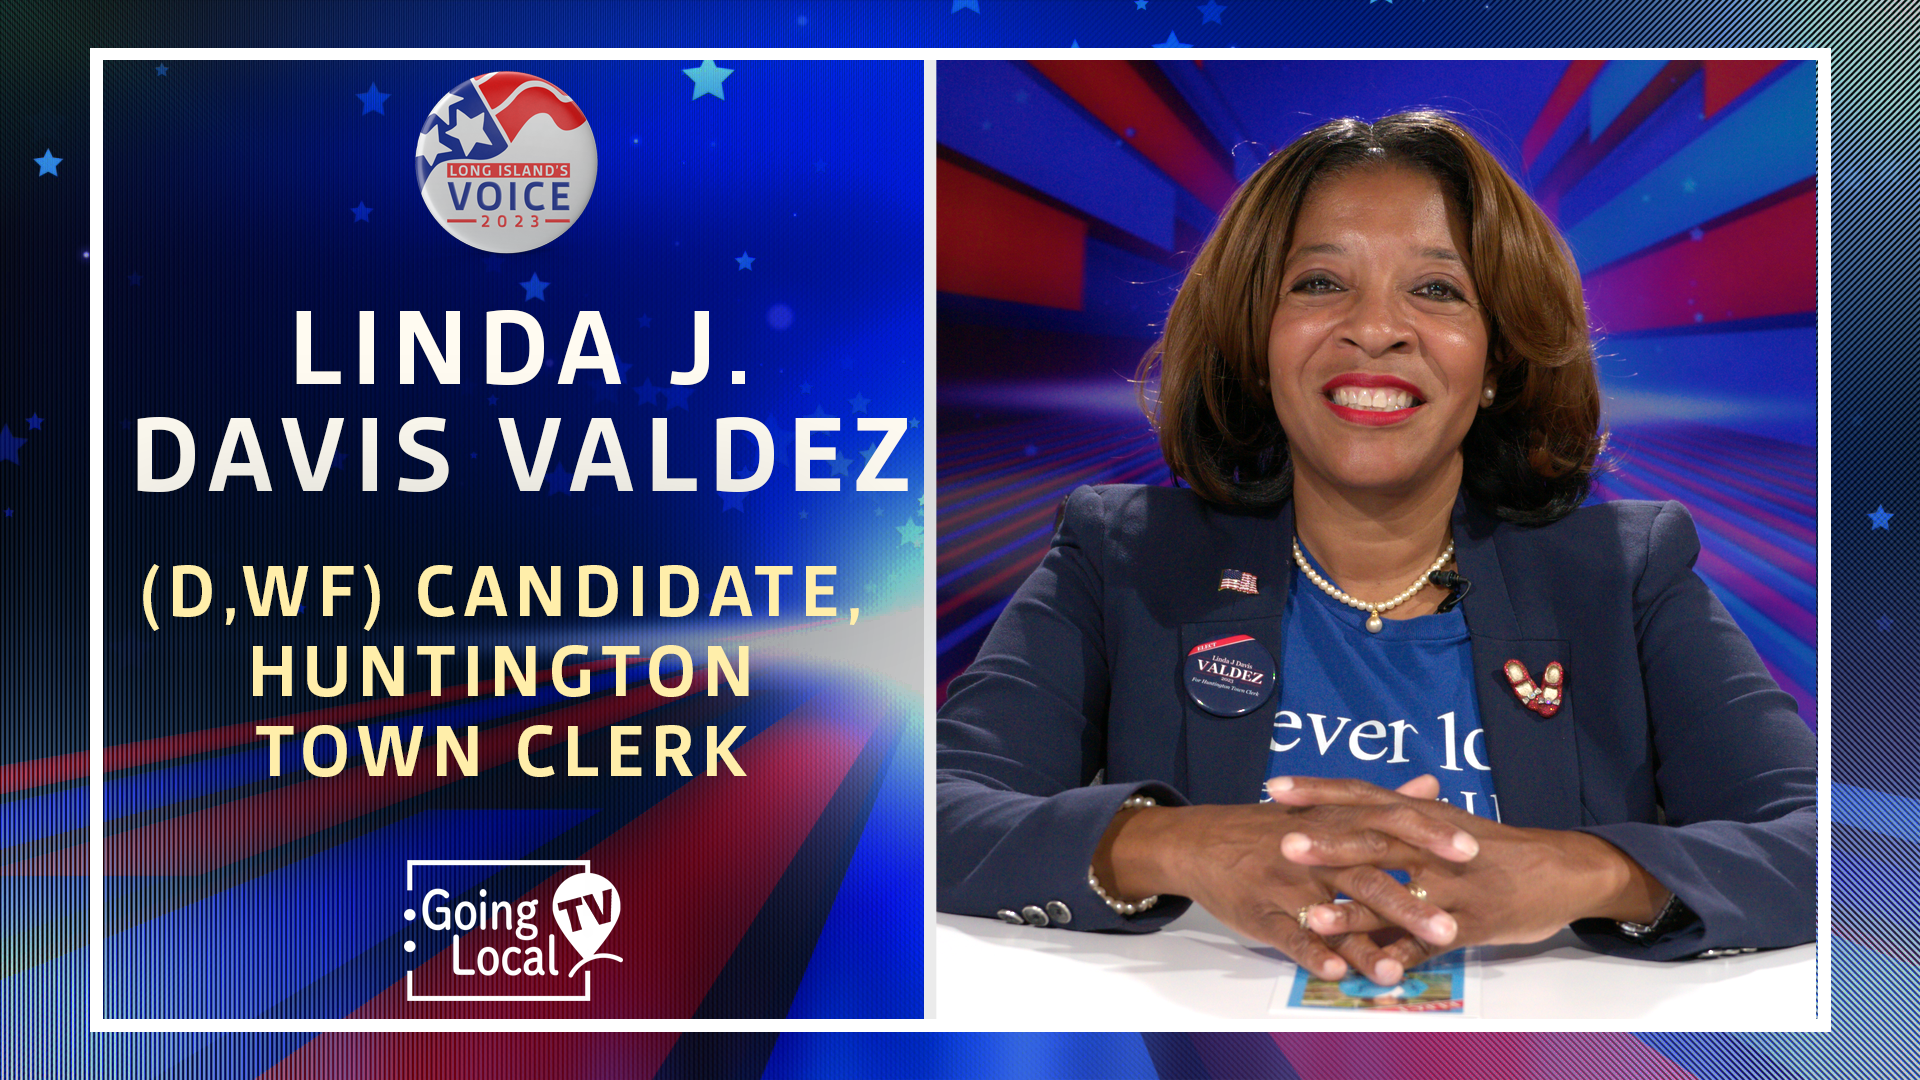 Linda J. Davis Valdez (D,WF) - Candidate, Huntington Town Clerk